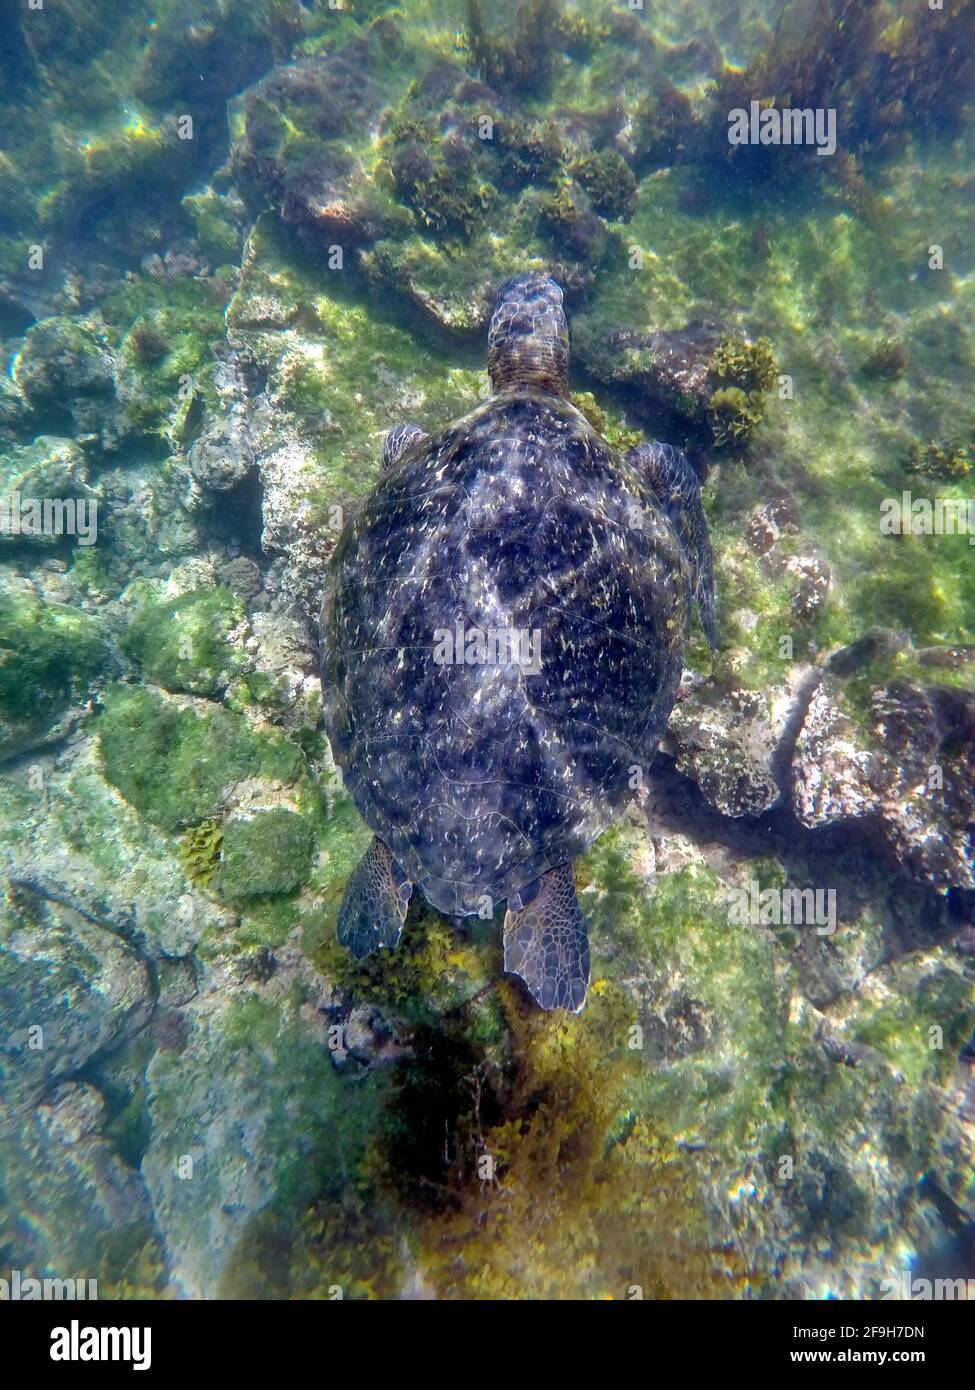 Galapagos green sea turtle at Punta Espinoza, Fernandina Island, Galapagos, Ecuador Stock Photo